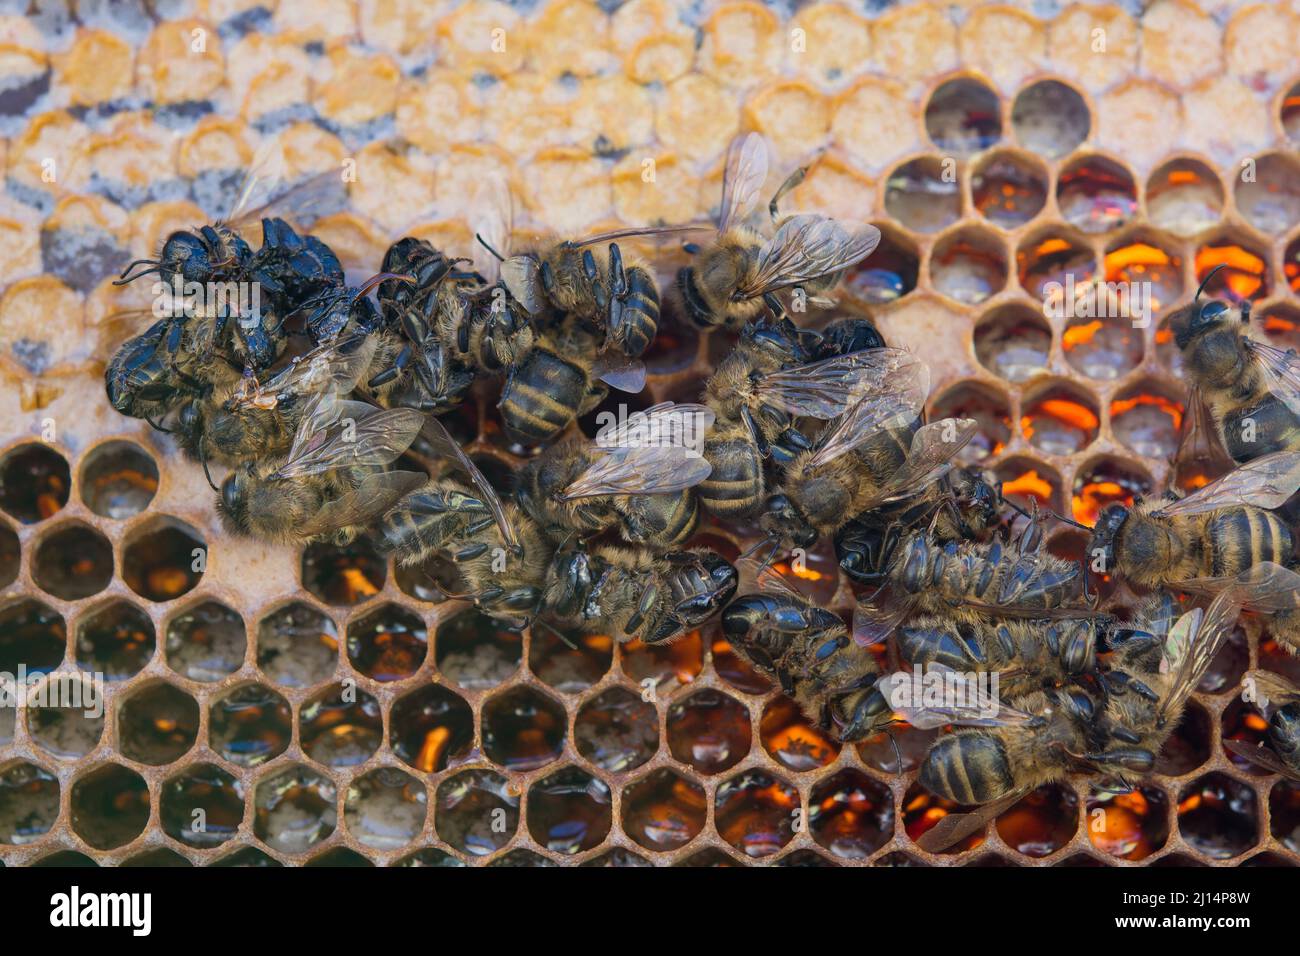 Las abejas muertas que muestra muchos detalles de cuerpo Foto de stock